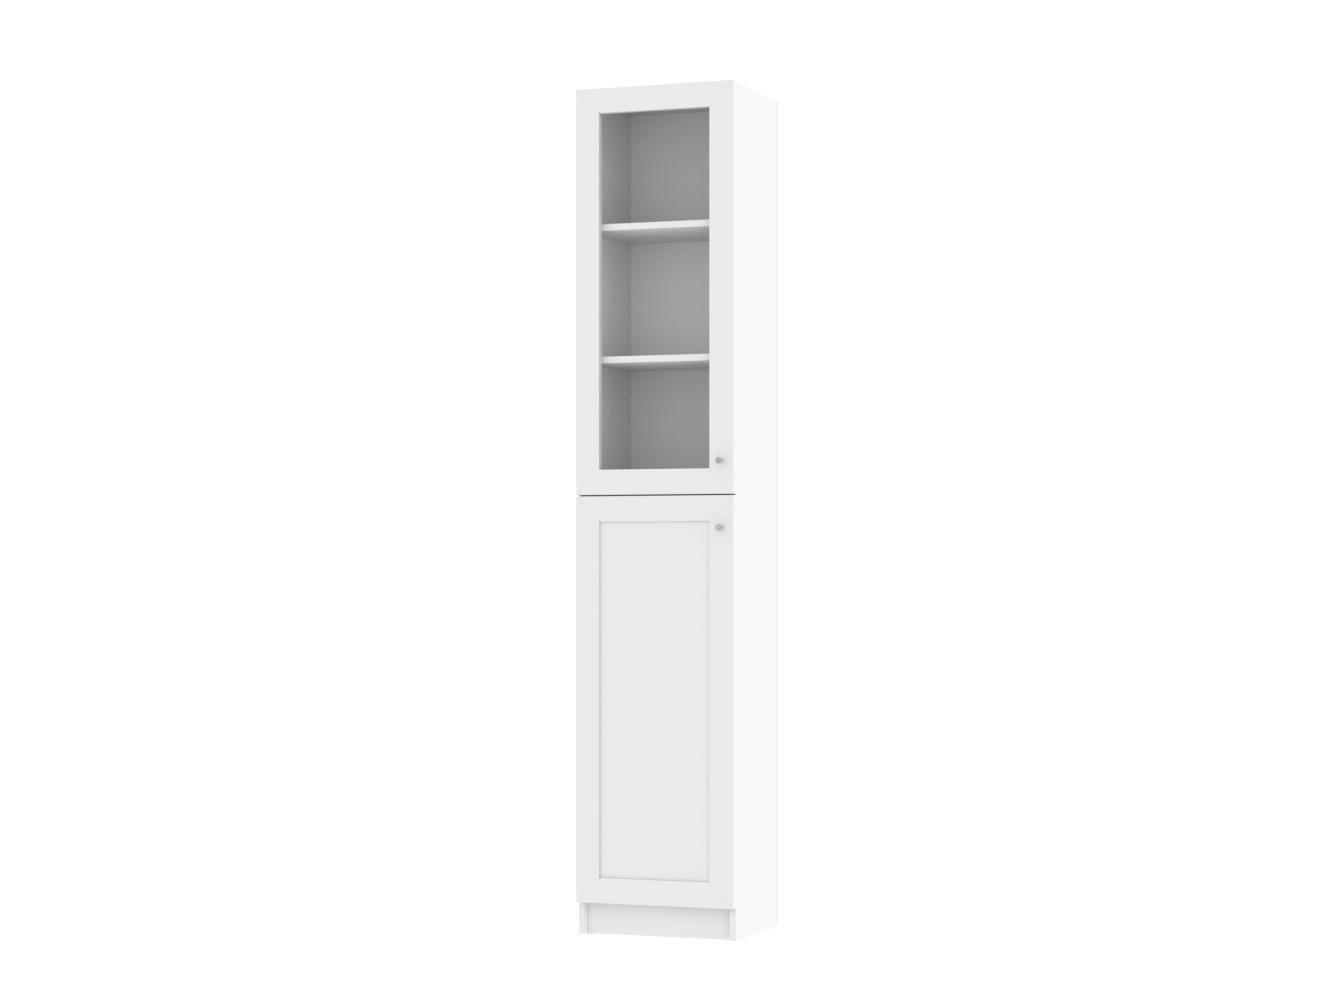 Изображение товара Книжный шкаф Билли 14 white ИКЕА (IKEA), 40x30x202 см на сайте adeta.ru